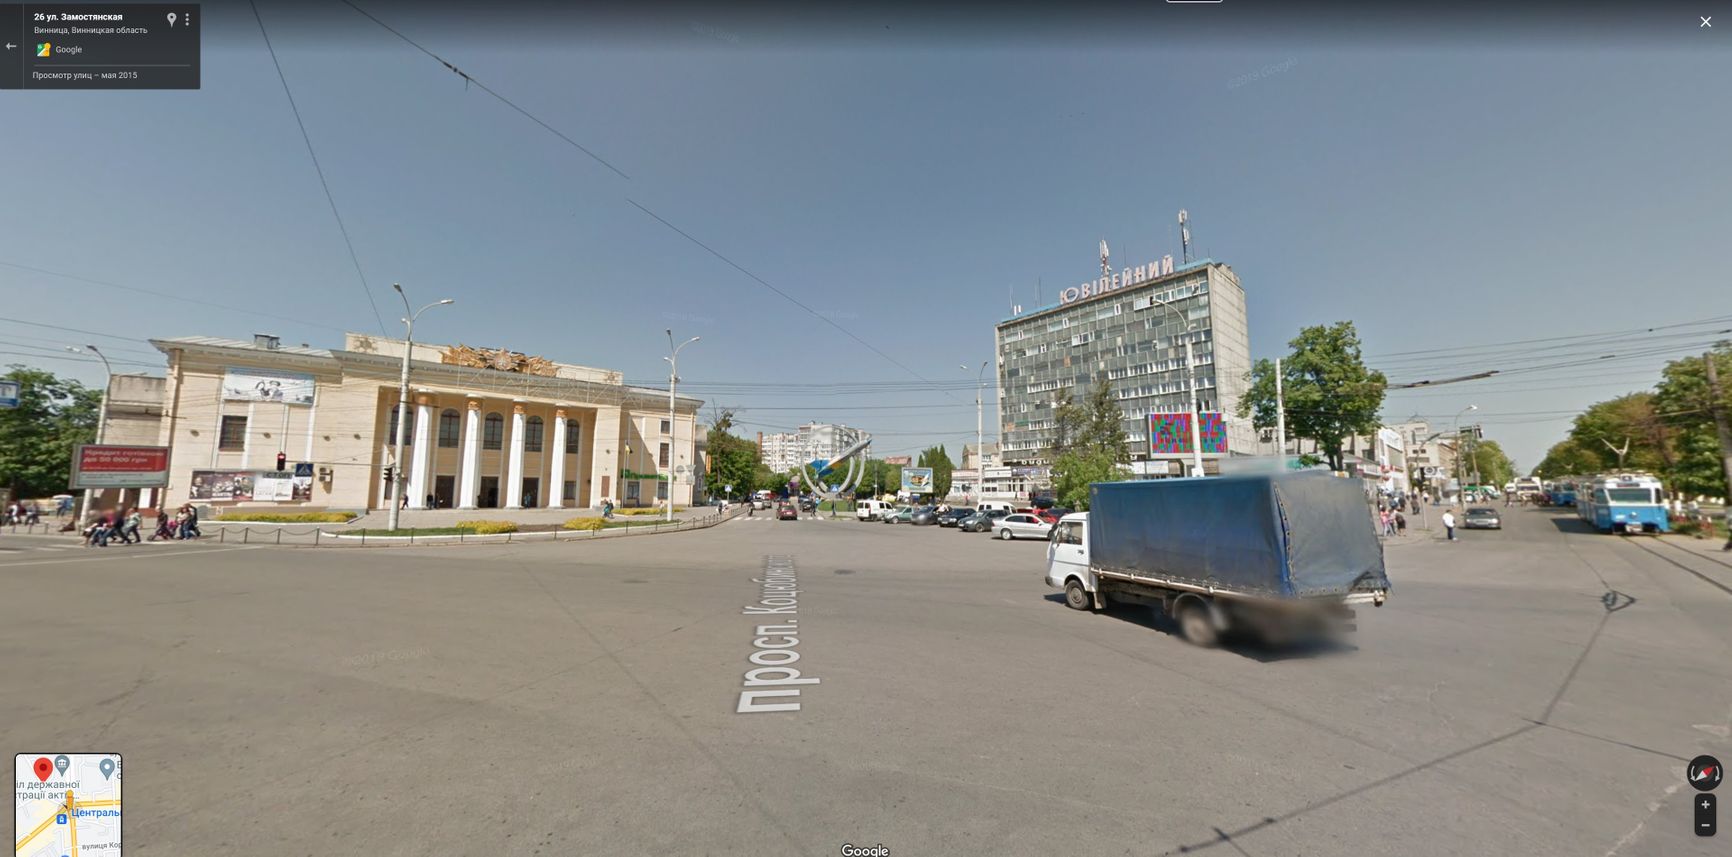 Соловьев выдал ракетный удар по центру Винницы за попадание по военной части в Винницкой области